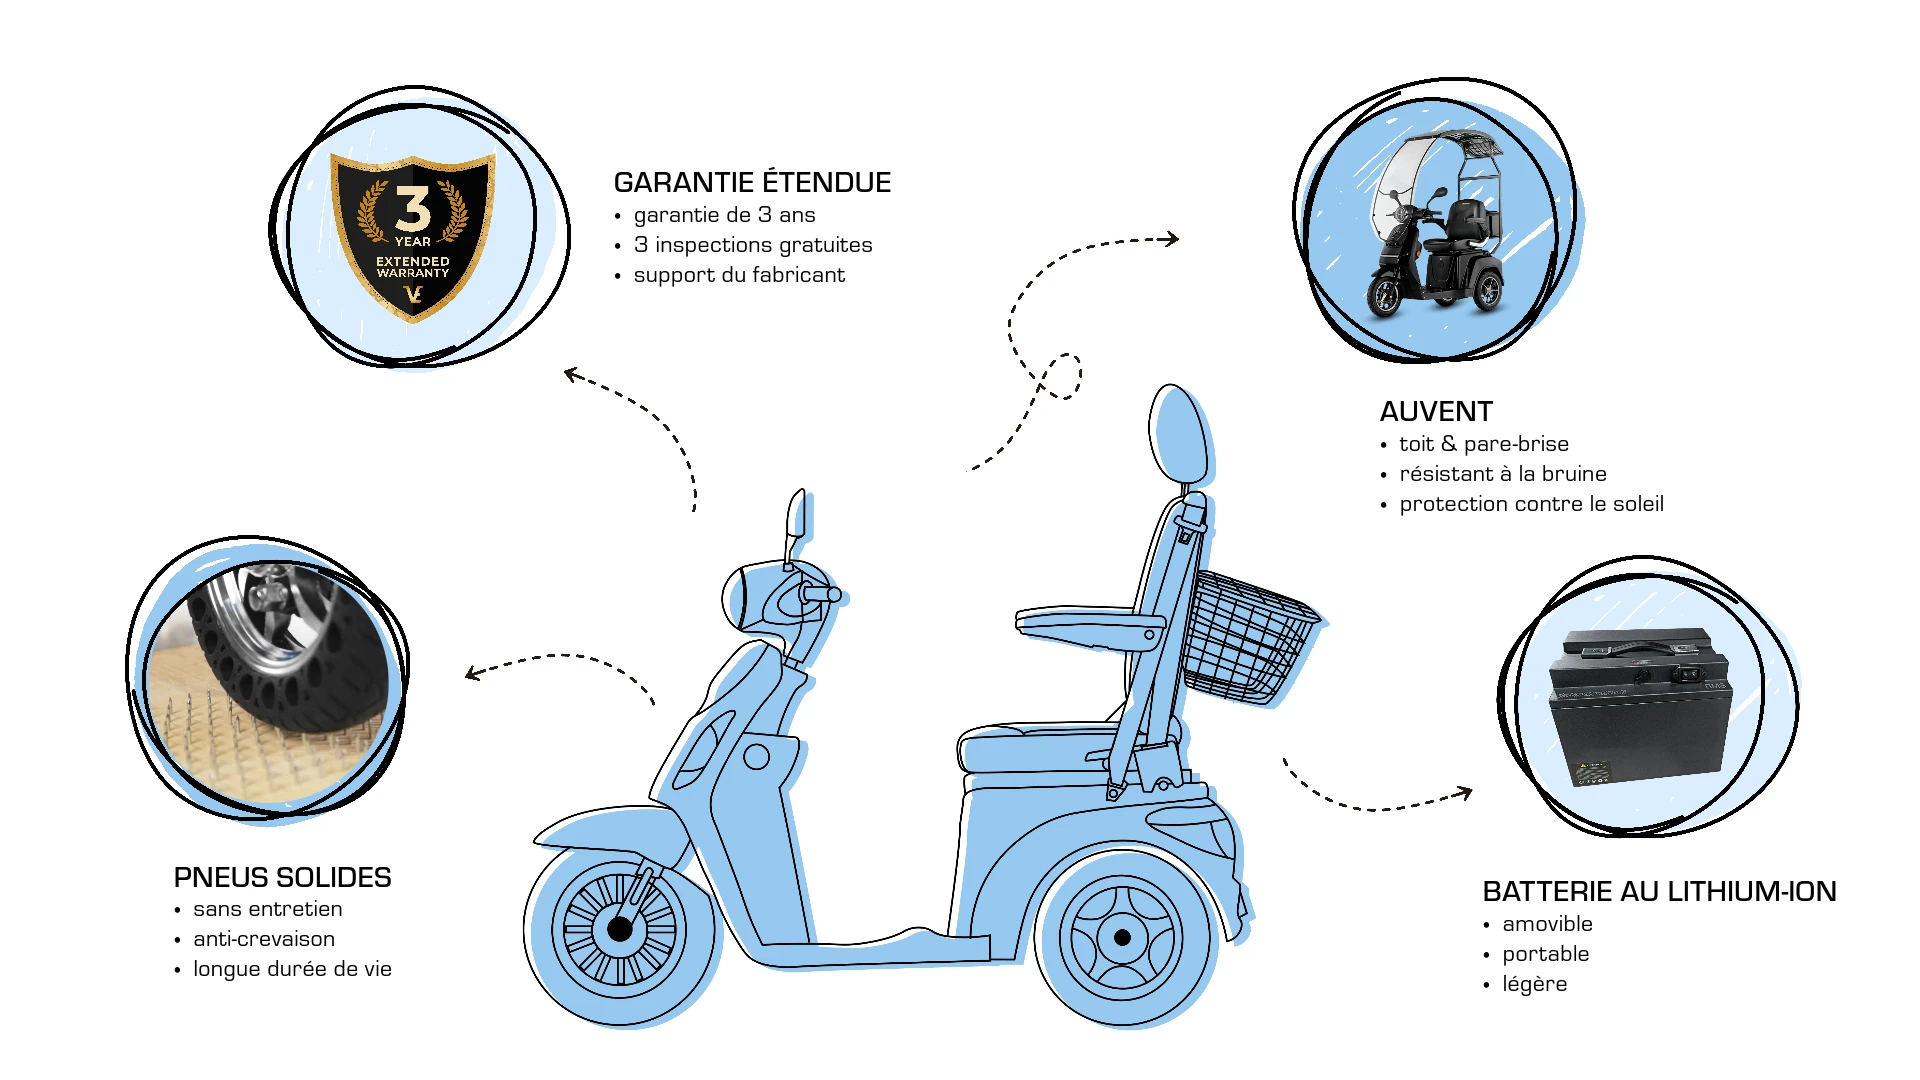 Veleco DRACO avec siège capitaine extras, améliorations, pneus solides pour scooter de mobilité, garantie prolongée, toit et pare-brise, batterie lithium-ion